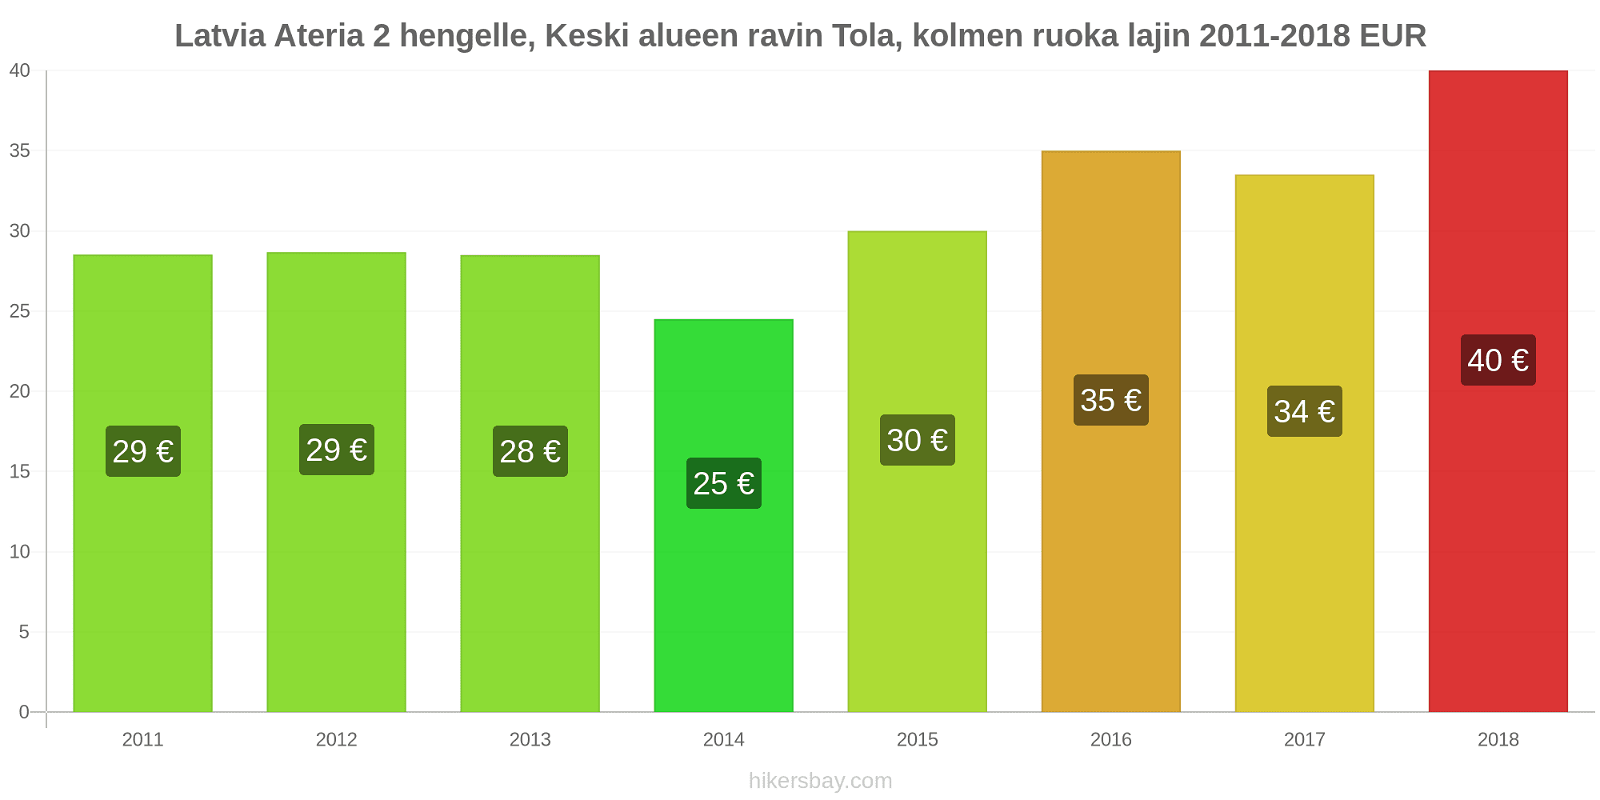 Latvia hintojen muutokset Ateria 2 hengelle, Keski alueen ravin Tola, kolmen ruoka lajin hikersbay.com